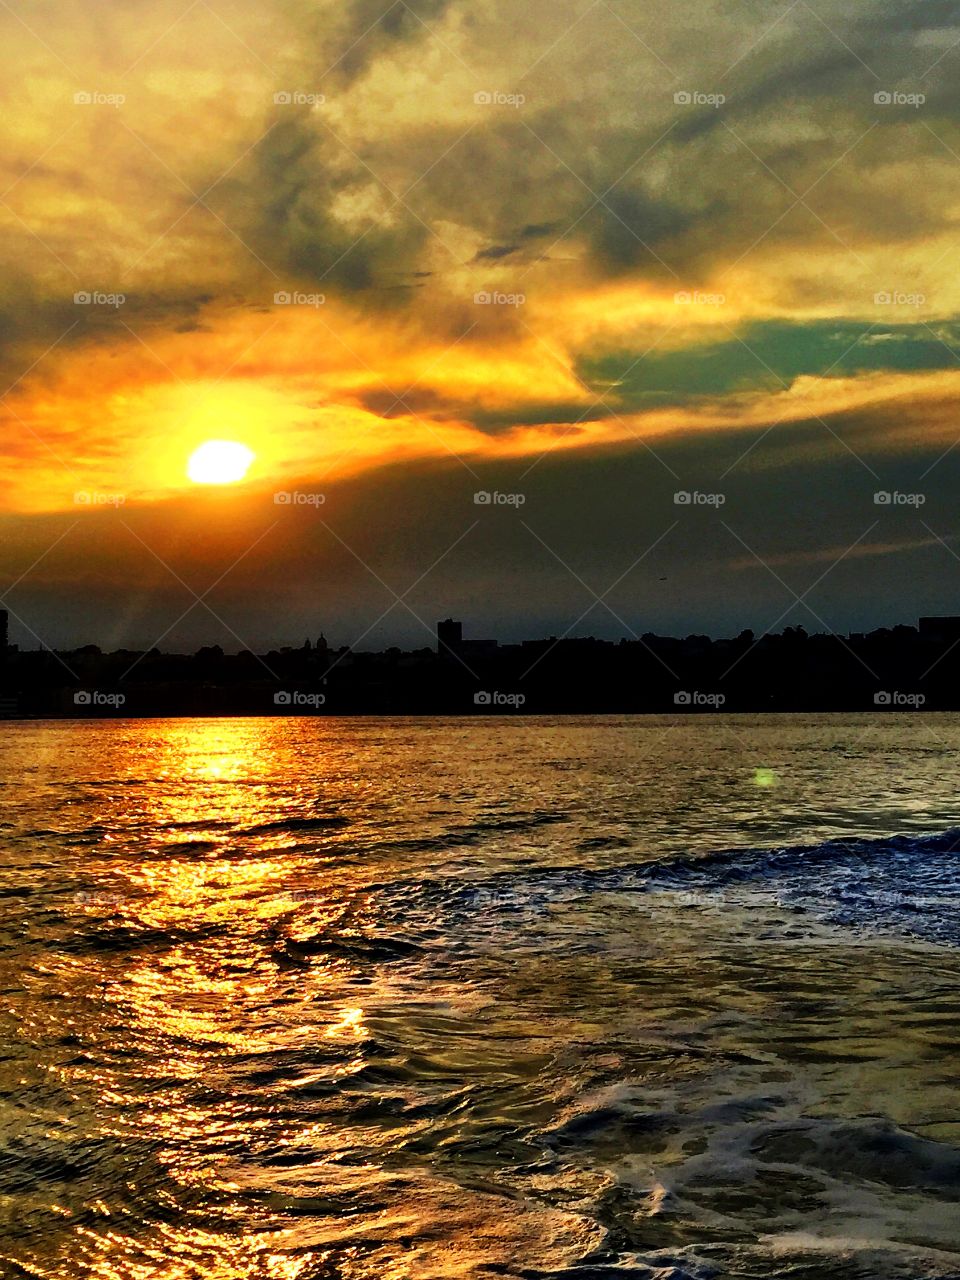 Sunset, New York City . Sunset on the Hudson River, New York City 